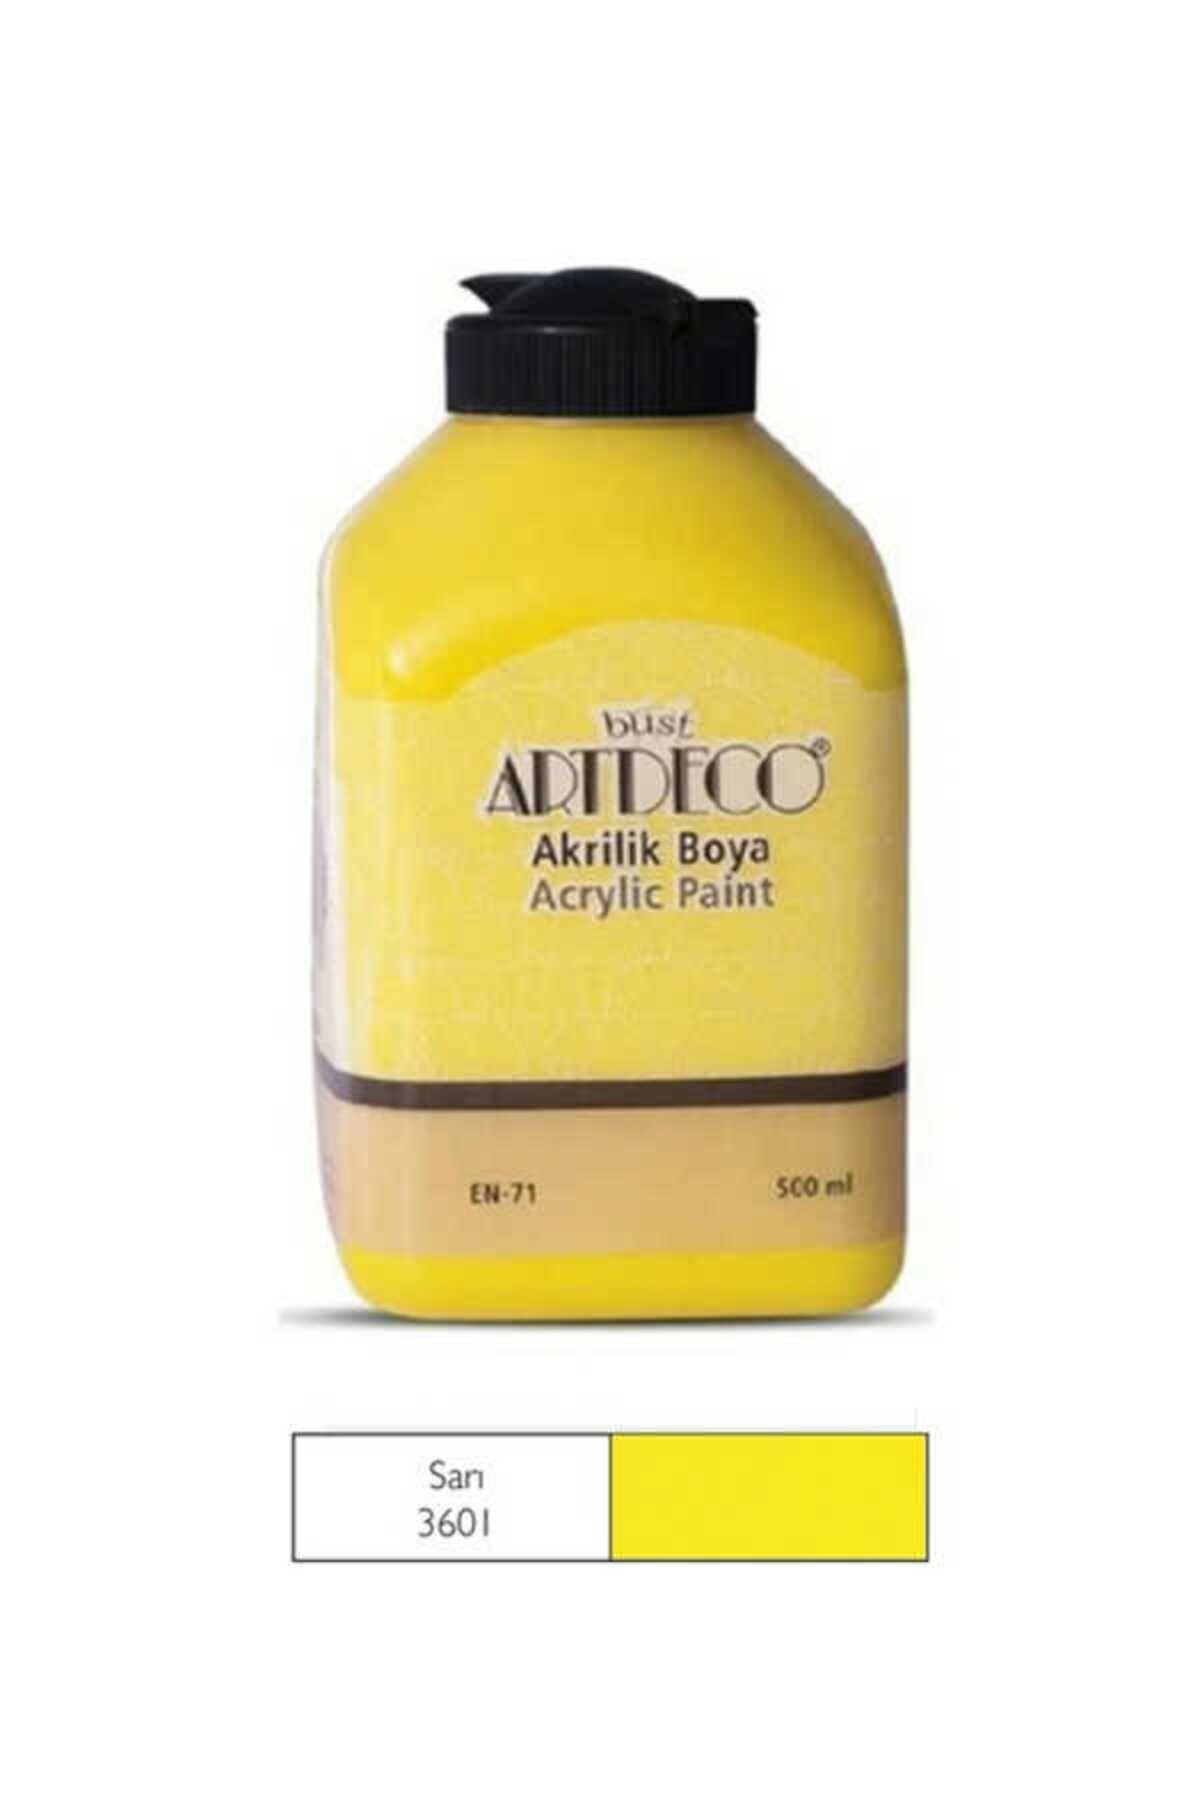 Artdeco Sarı Akrilik Boya 500 ml